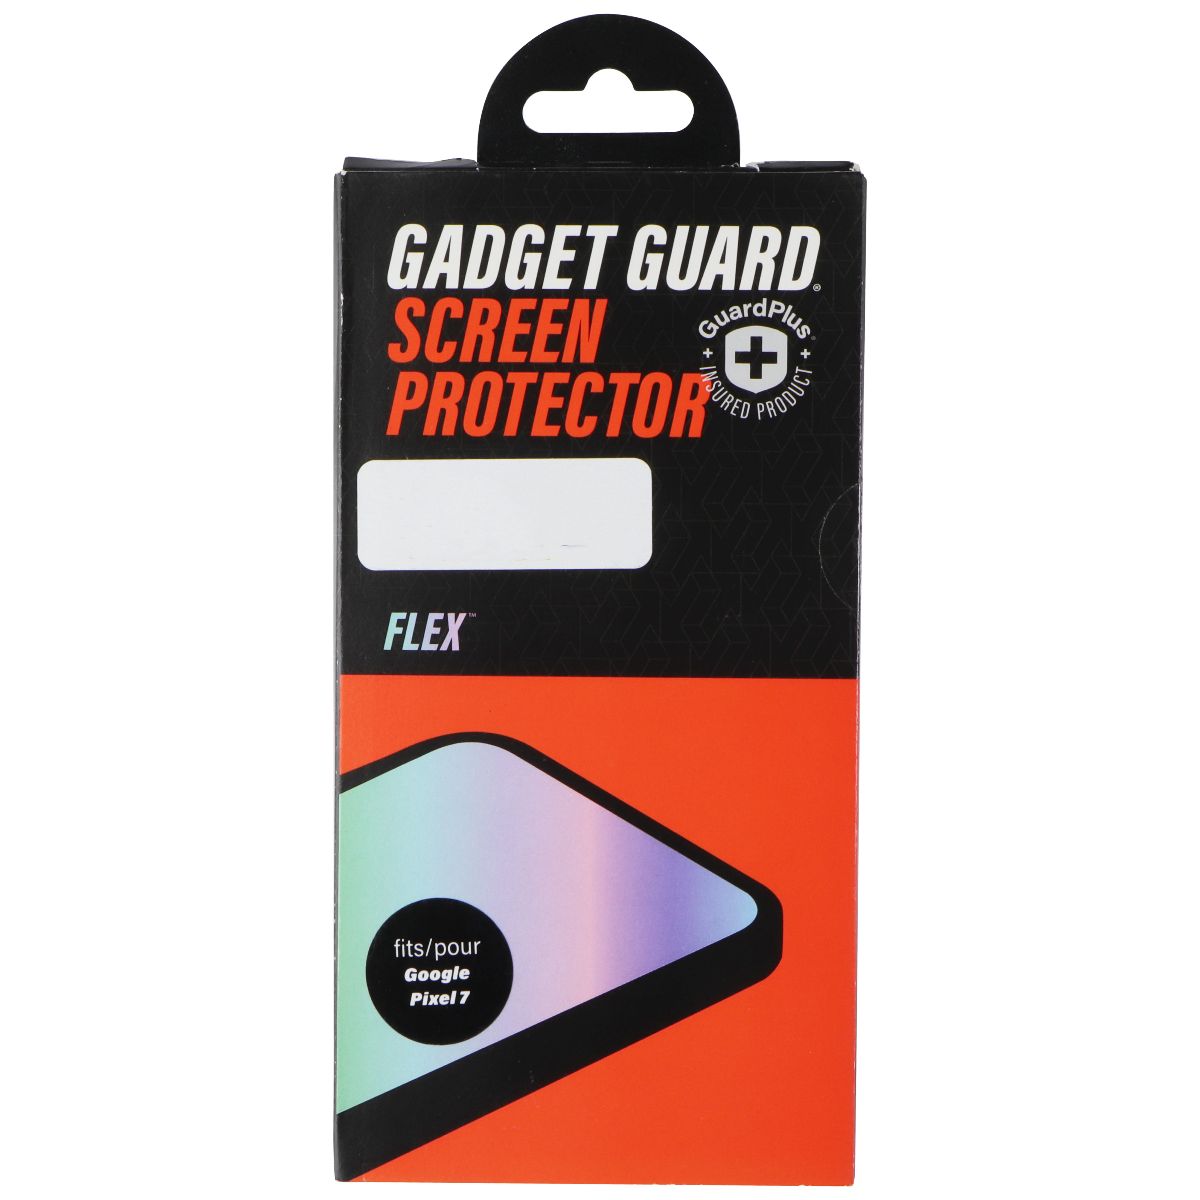 Gadget Guard GuardPlus Flex Screen Protector for Google Pixel 7